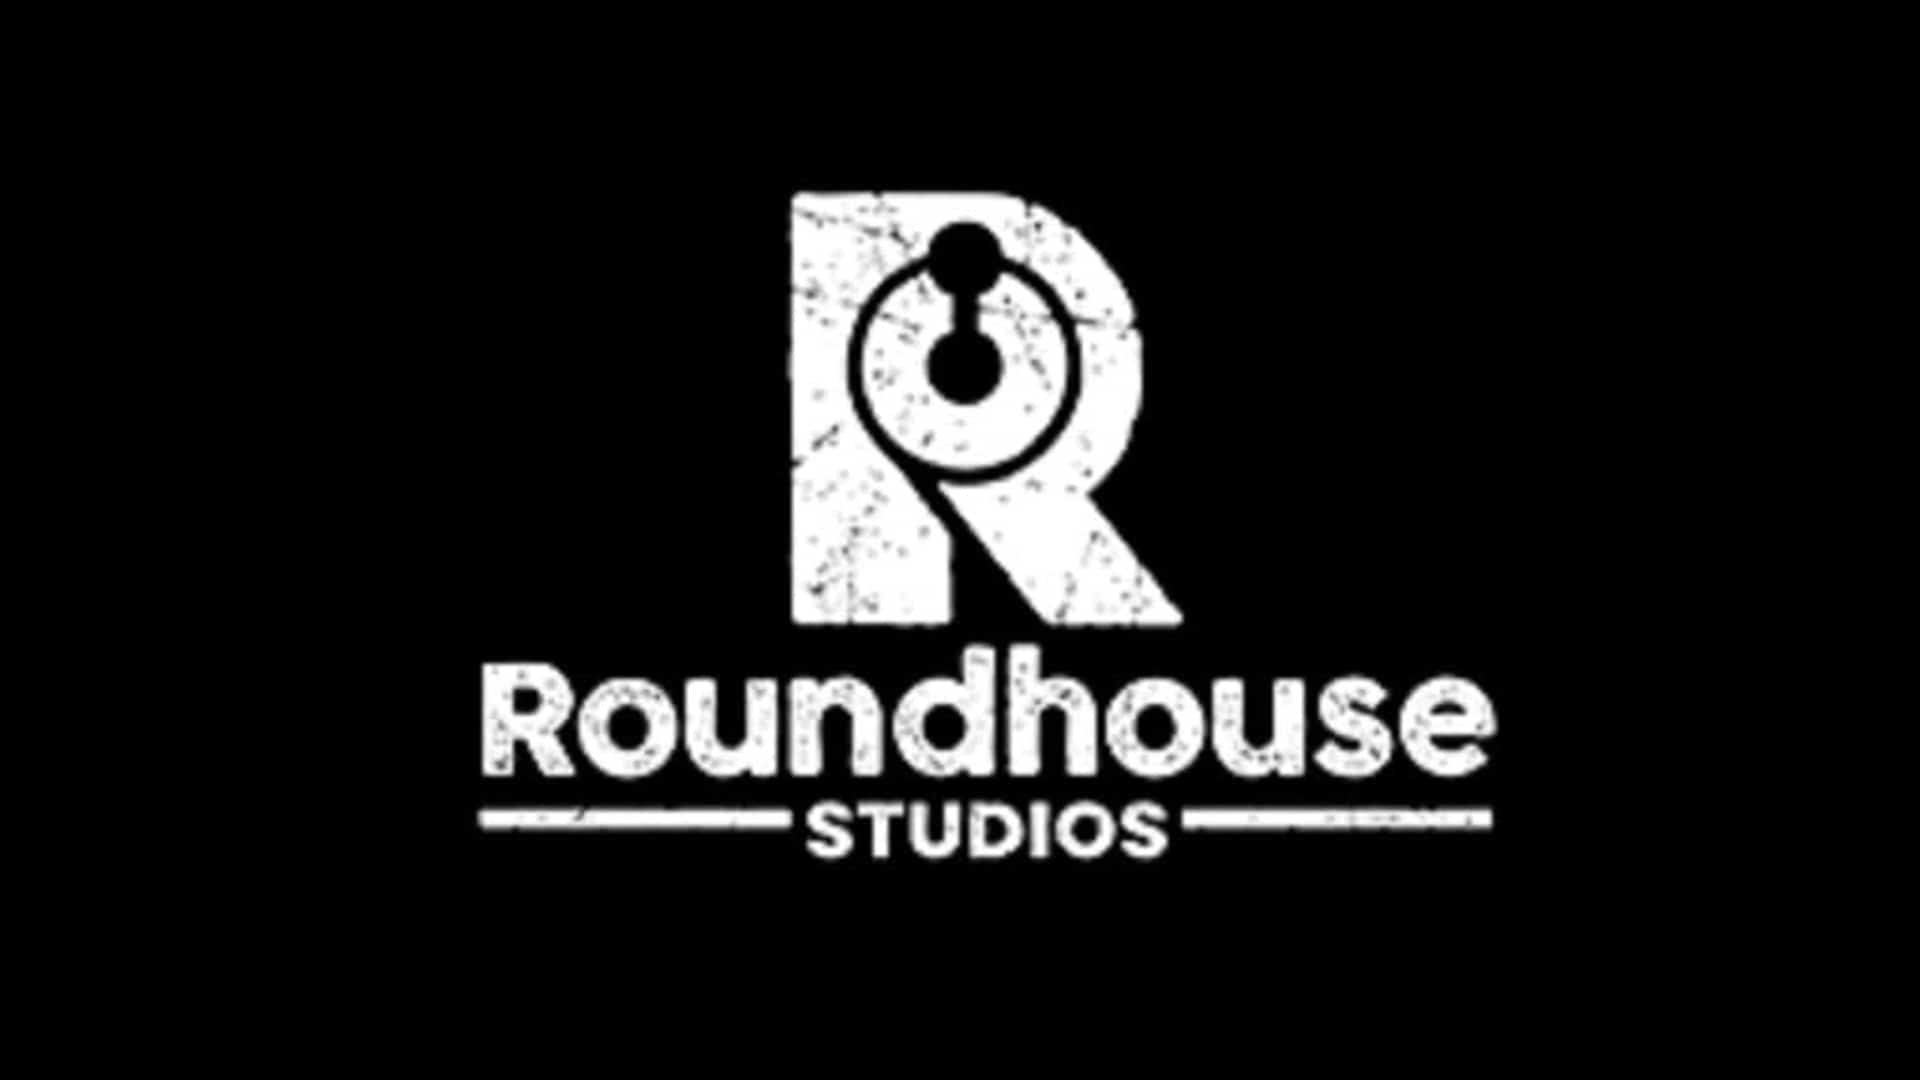 Roundhouse Studios está trabajando en un juego basado en una licencia de cómic importante, GamersRD